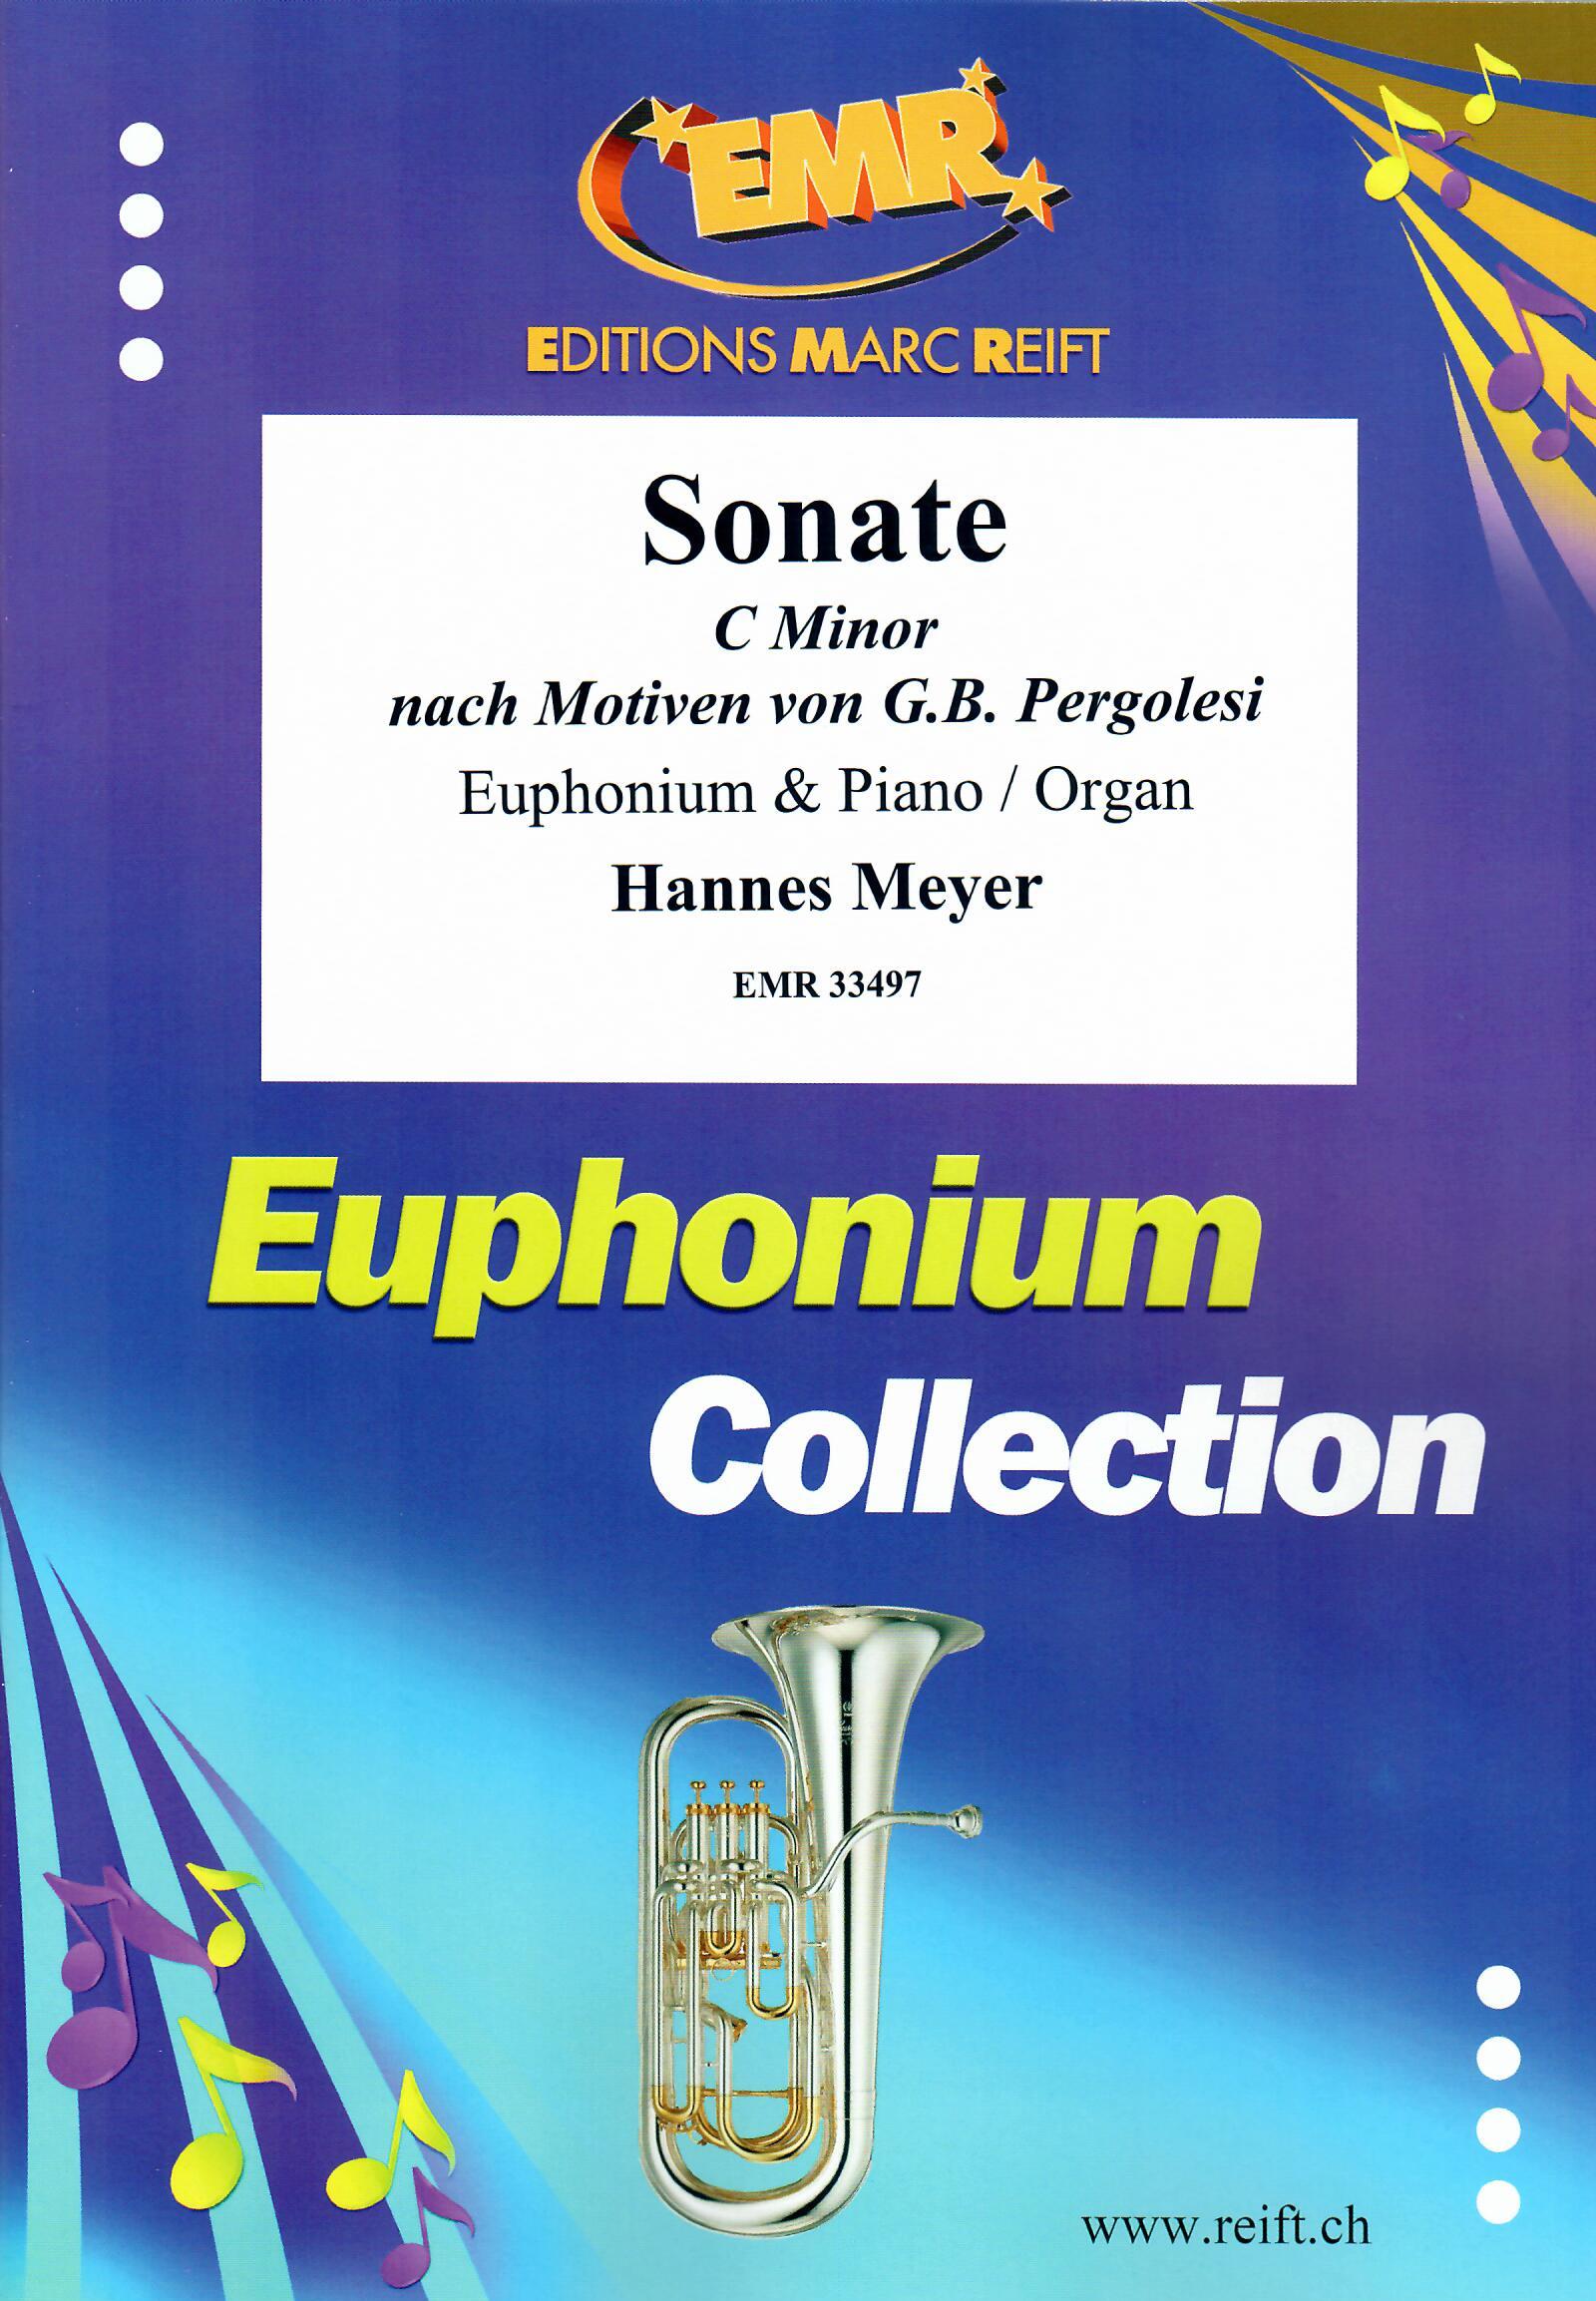 SONATE C MINOR, SOLOS - Euphonium